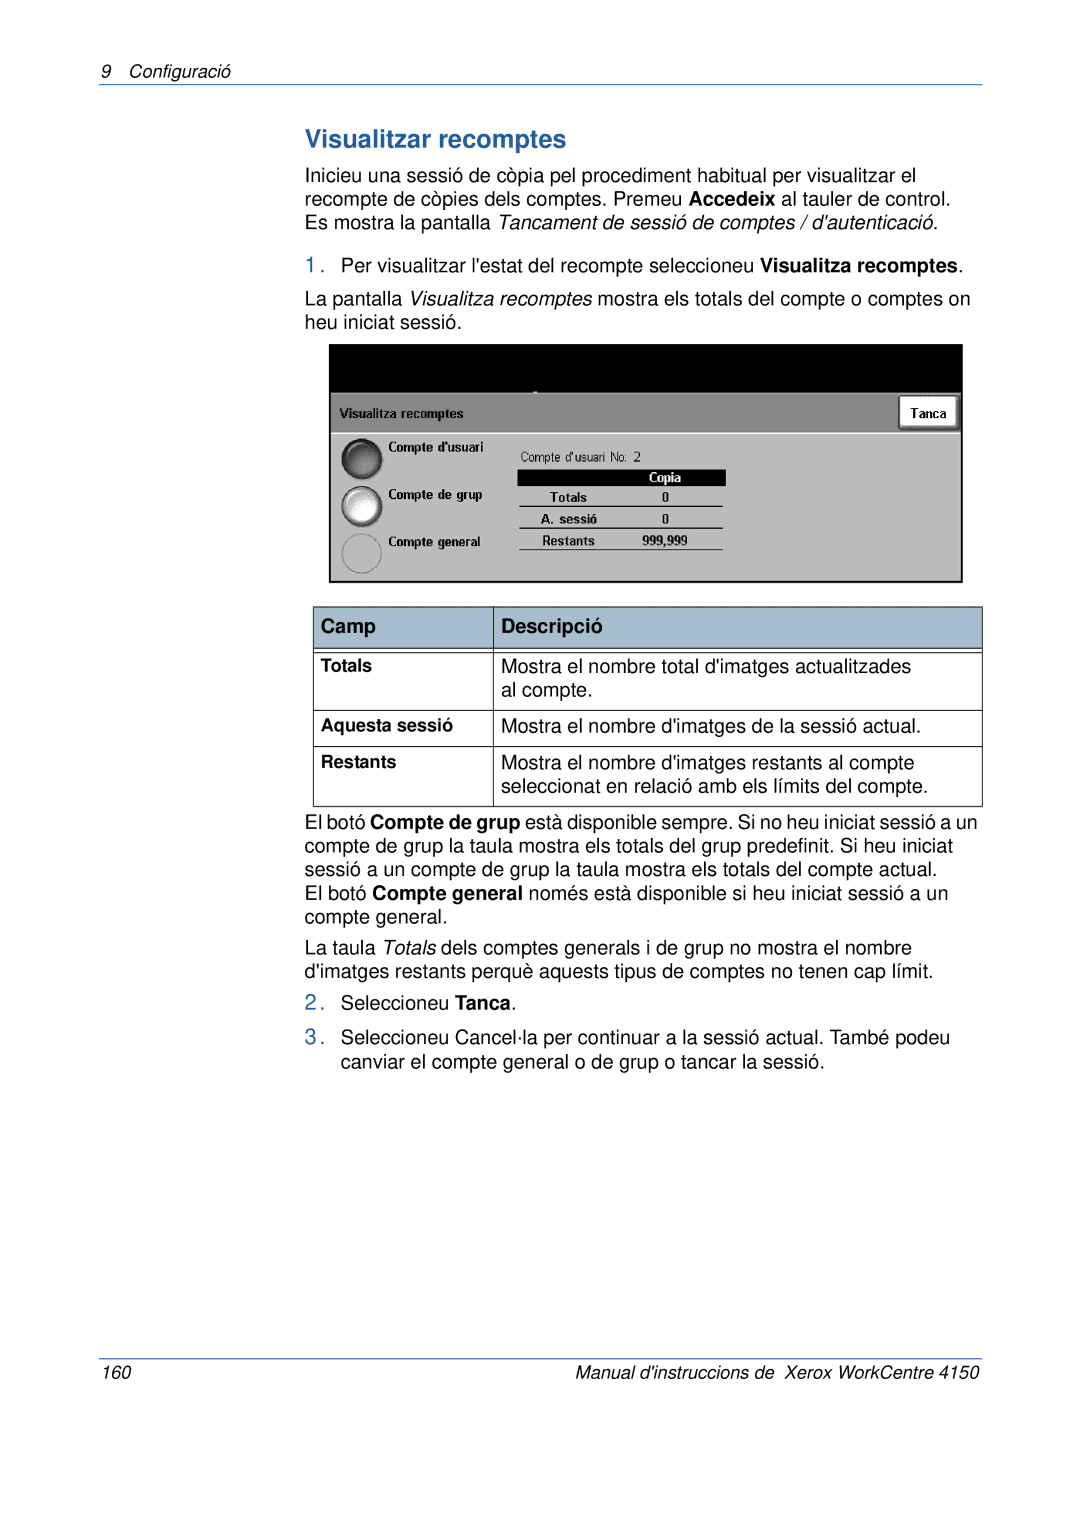 Xerox 5.0 24.03.06 manual Visualitzar recomptes, Camp Descripció 